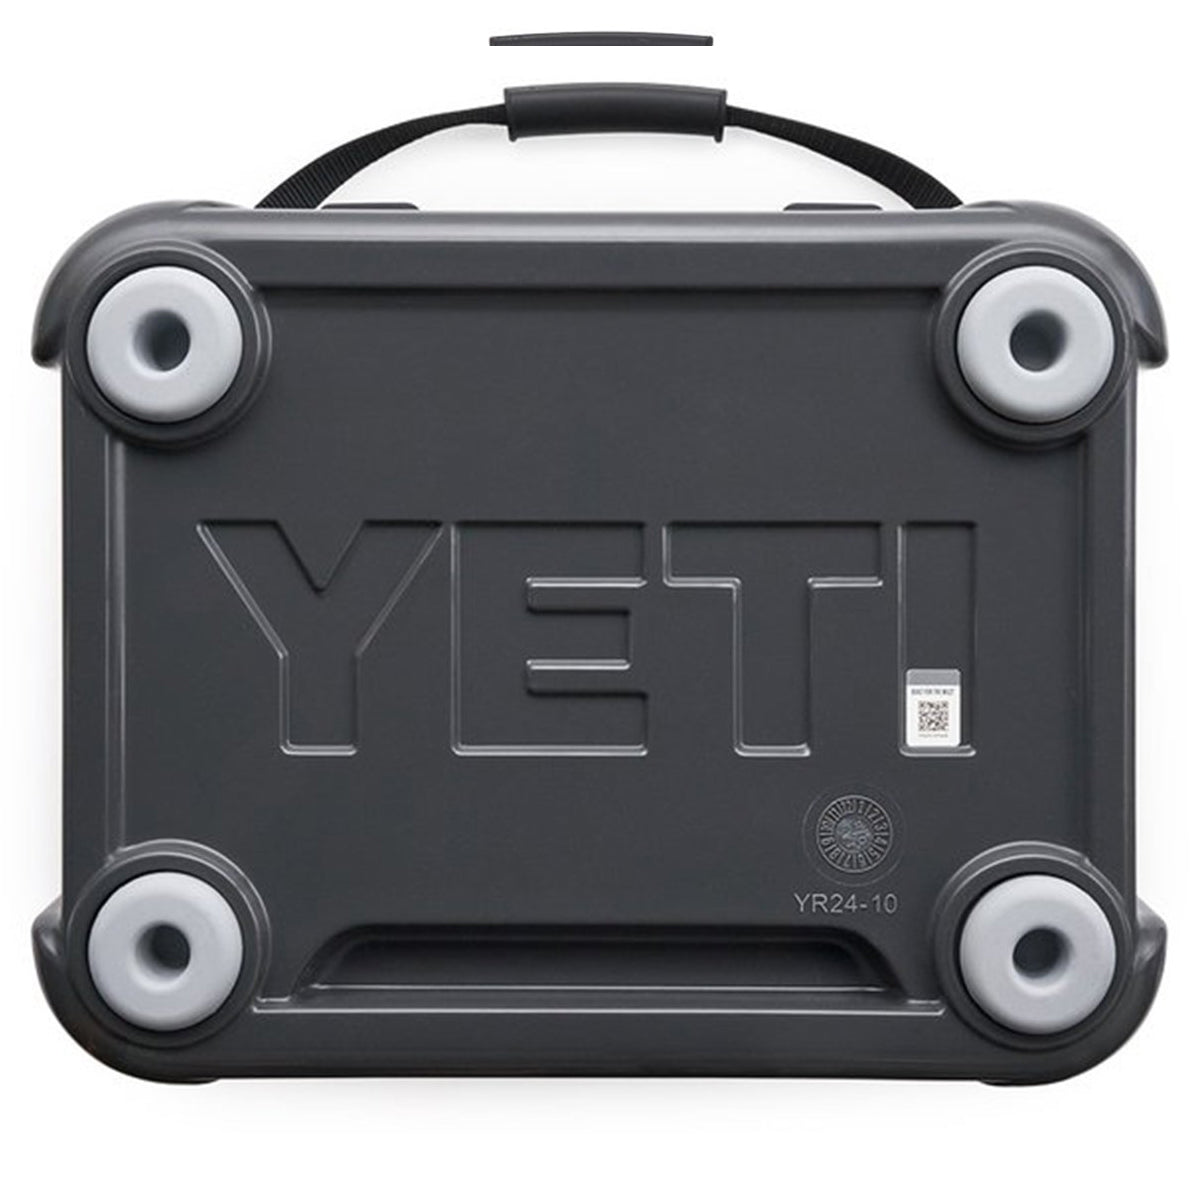 YETI Roadie 24 Cooler in YETI Roadie 24 Cooler by YETI | Camping - goHUNT Shop by GOHUNT | YETI - GOHUNT Shop